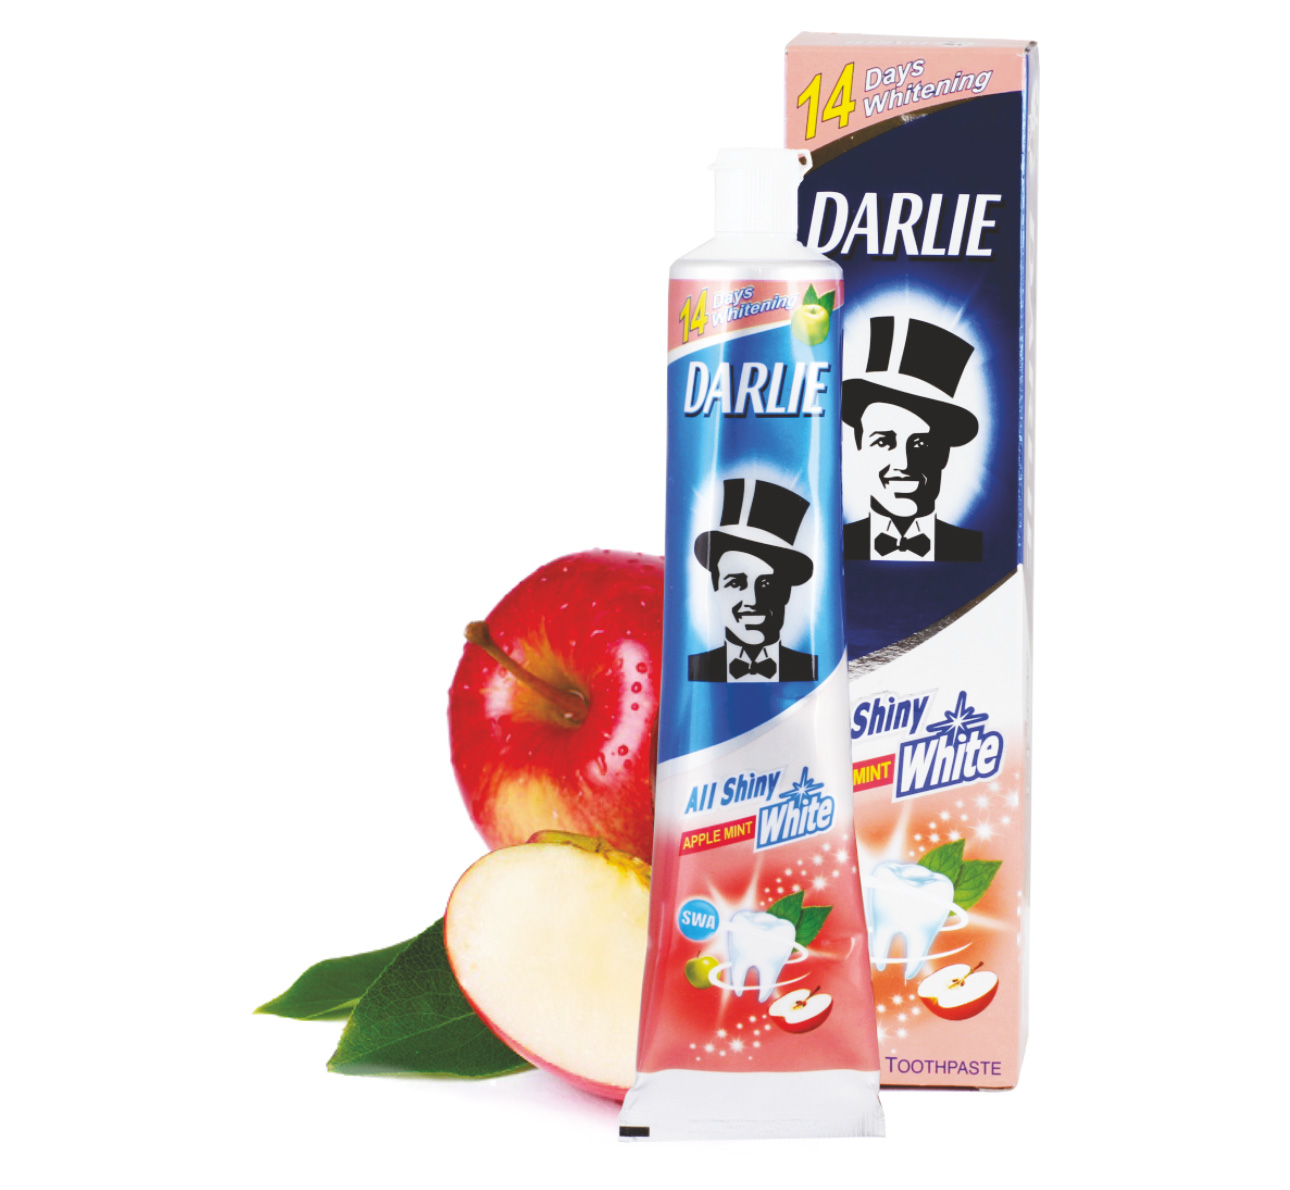 Тайская зубная паста Darli c яблочным вкусом DARLIE apple Toothpaste. darlie_all_shiny_white. ТАЙСКАЯ КОСМЕТИКА